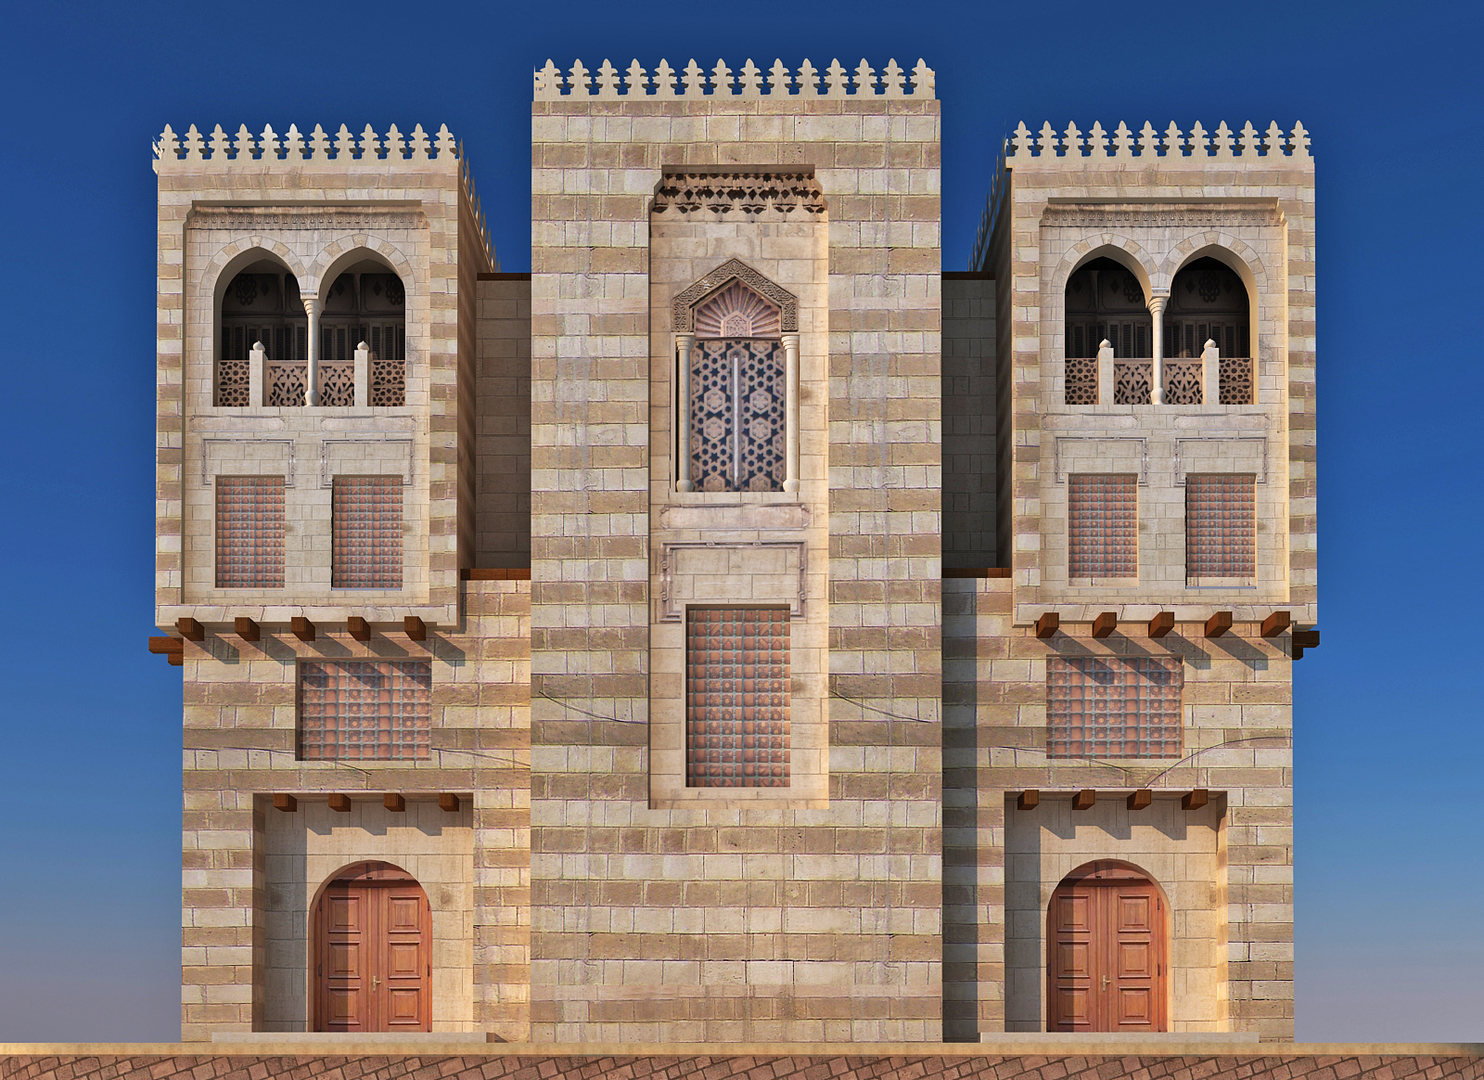 老萨那装饰的房子 库存照片. 图片 包括有 楼层, 宫殿, 阿拉伯人, 城市, 历史, 教长, 回教, 装饰 - 82120642